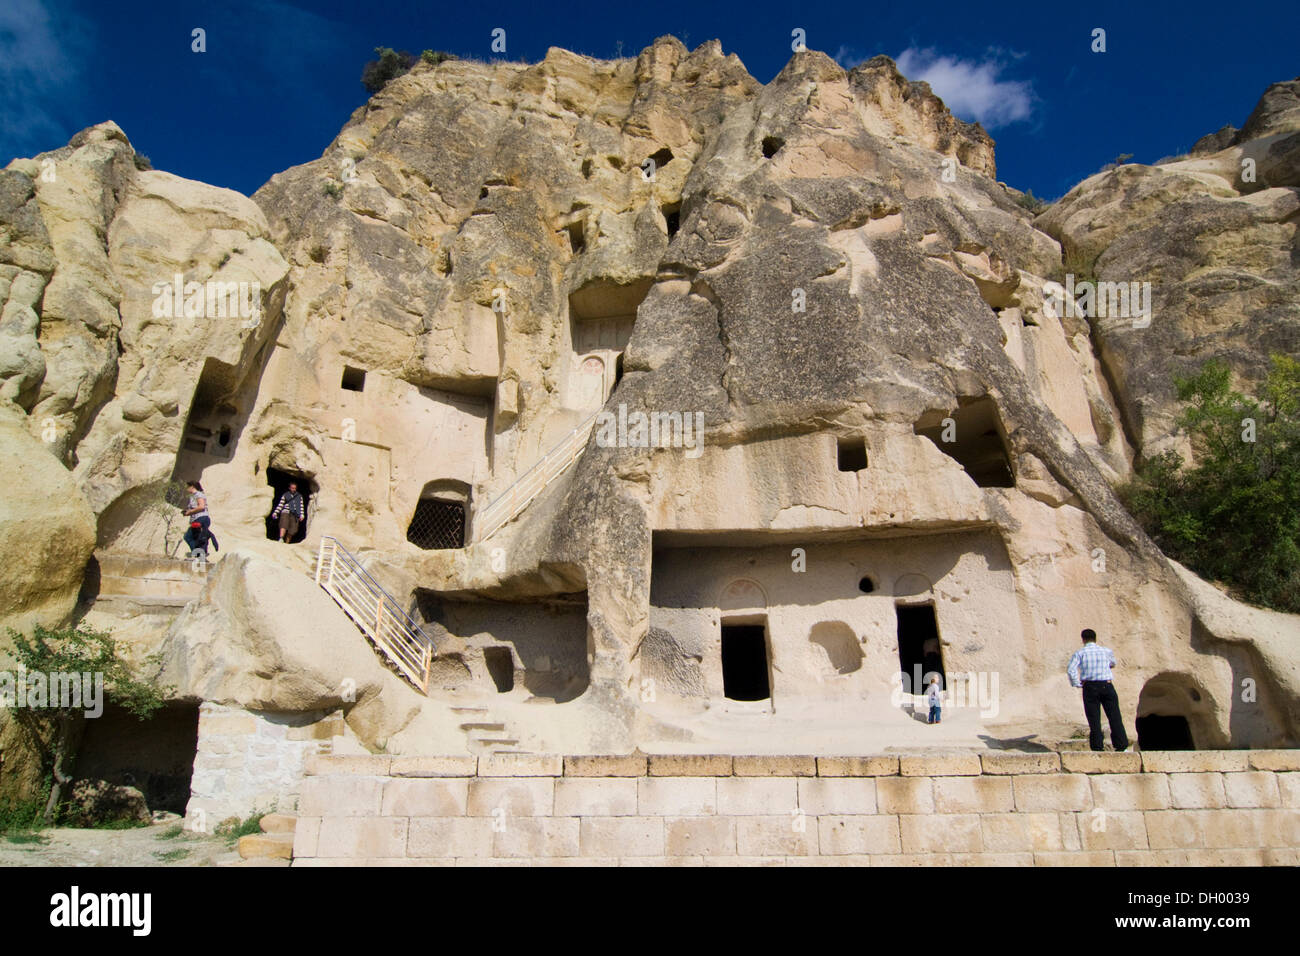 Chiesa rupestre nel museo a cielo aperto, sito Patrimonio Mondiale dell'UNESCO, Goreme, Cappadocia, Anatolia centrale, Turchia, Asia Foto Stock